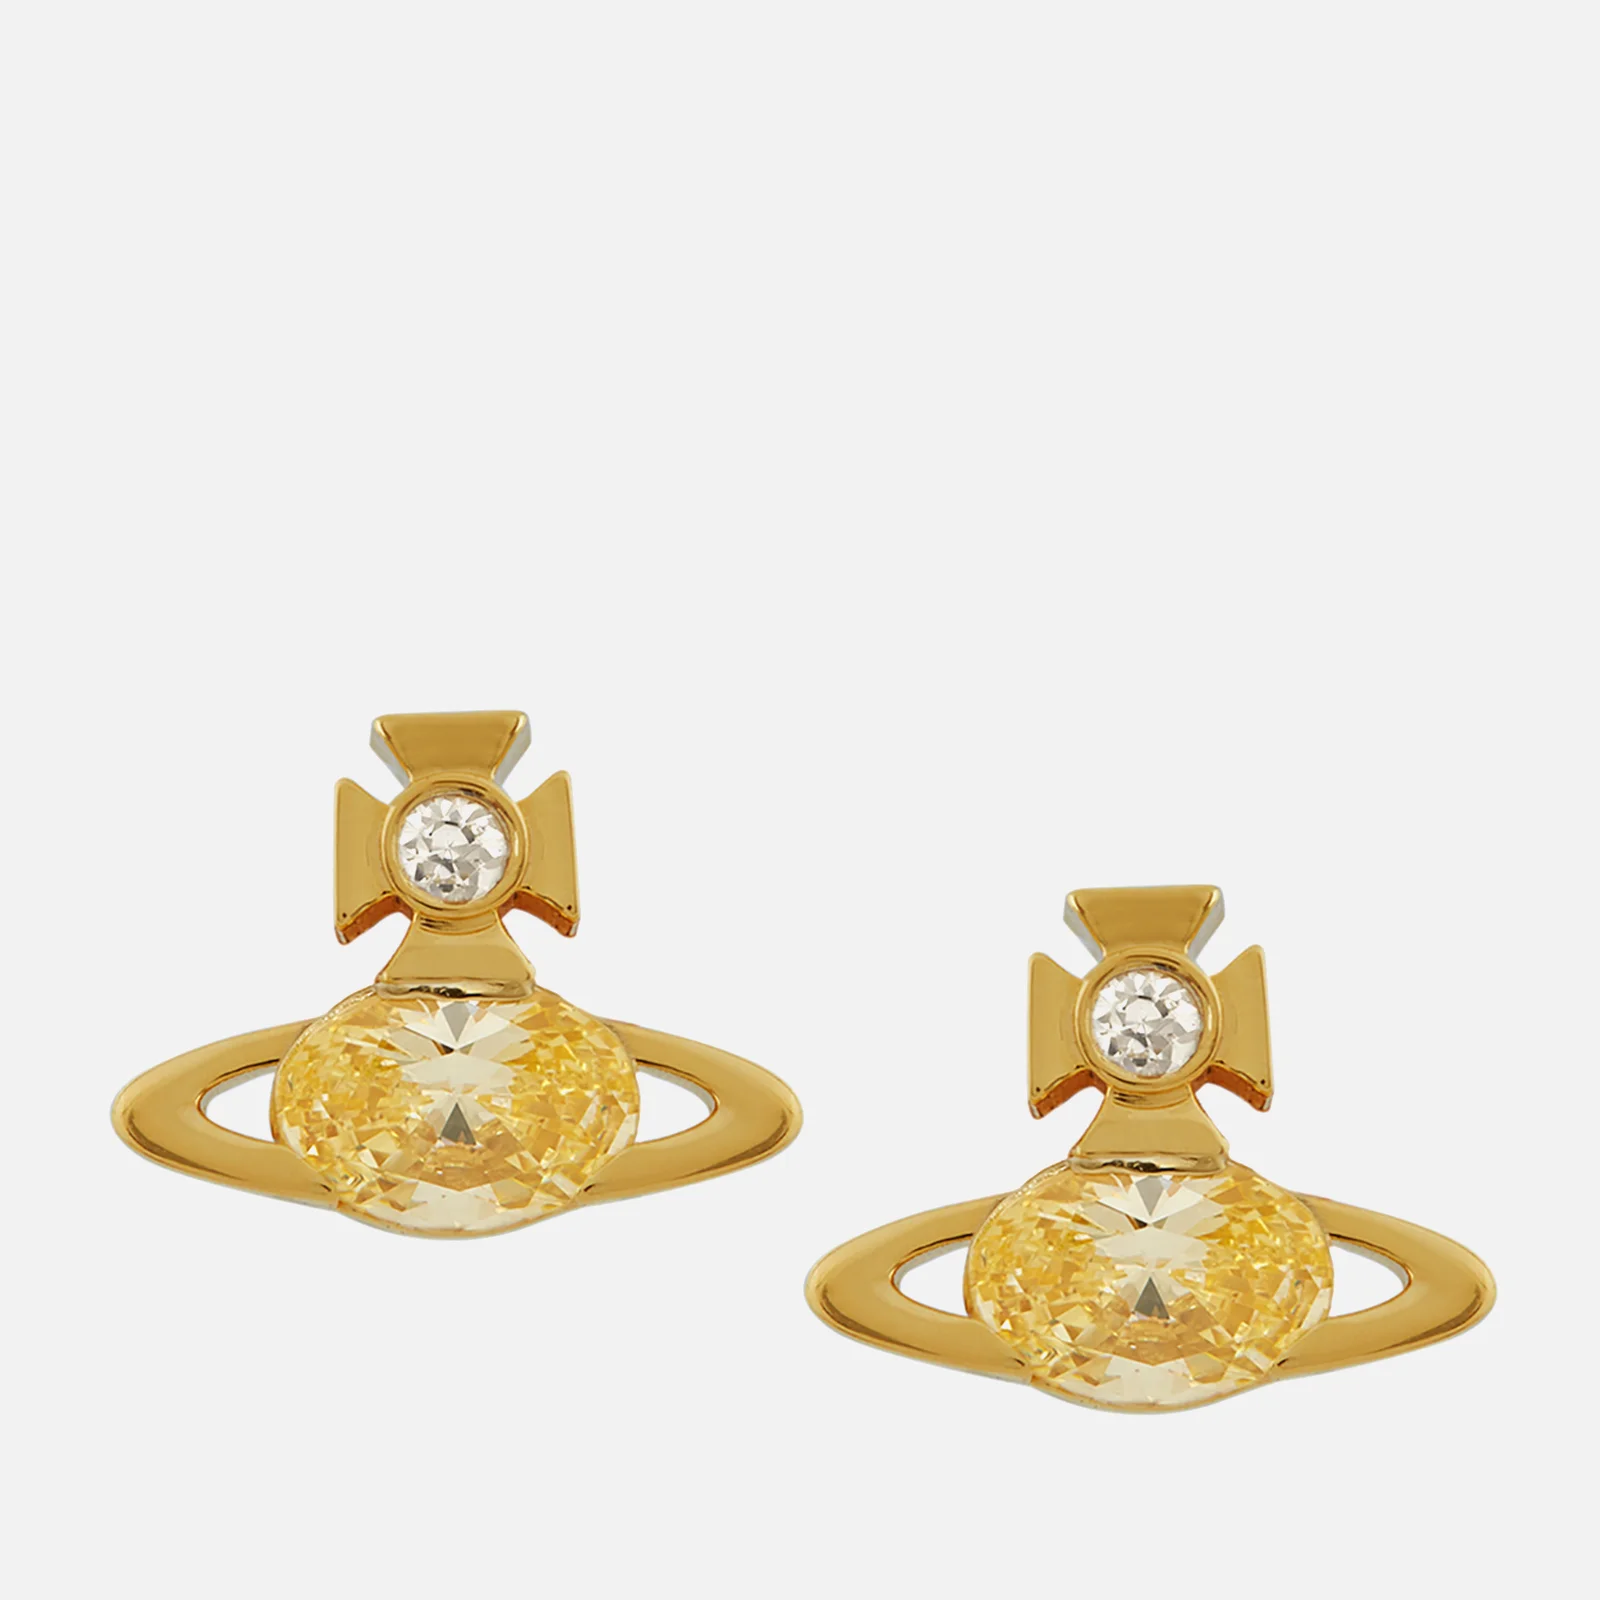 Vivienne Westwood Allie Gold Tone Stud Earrings Image 1